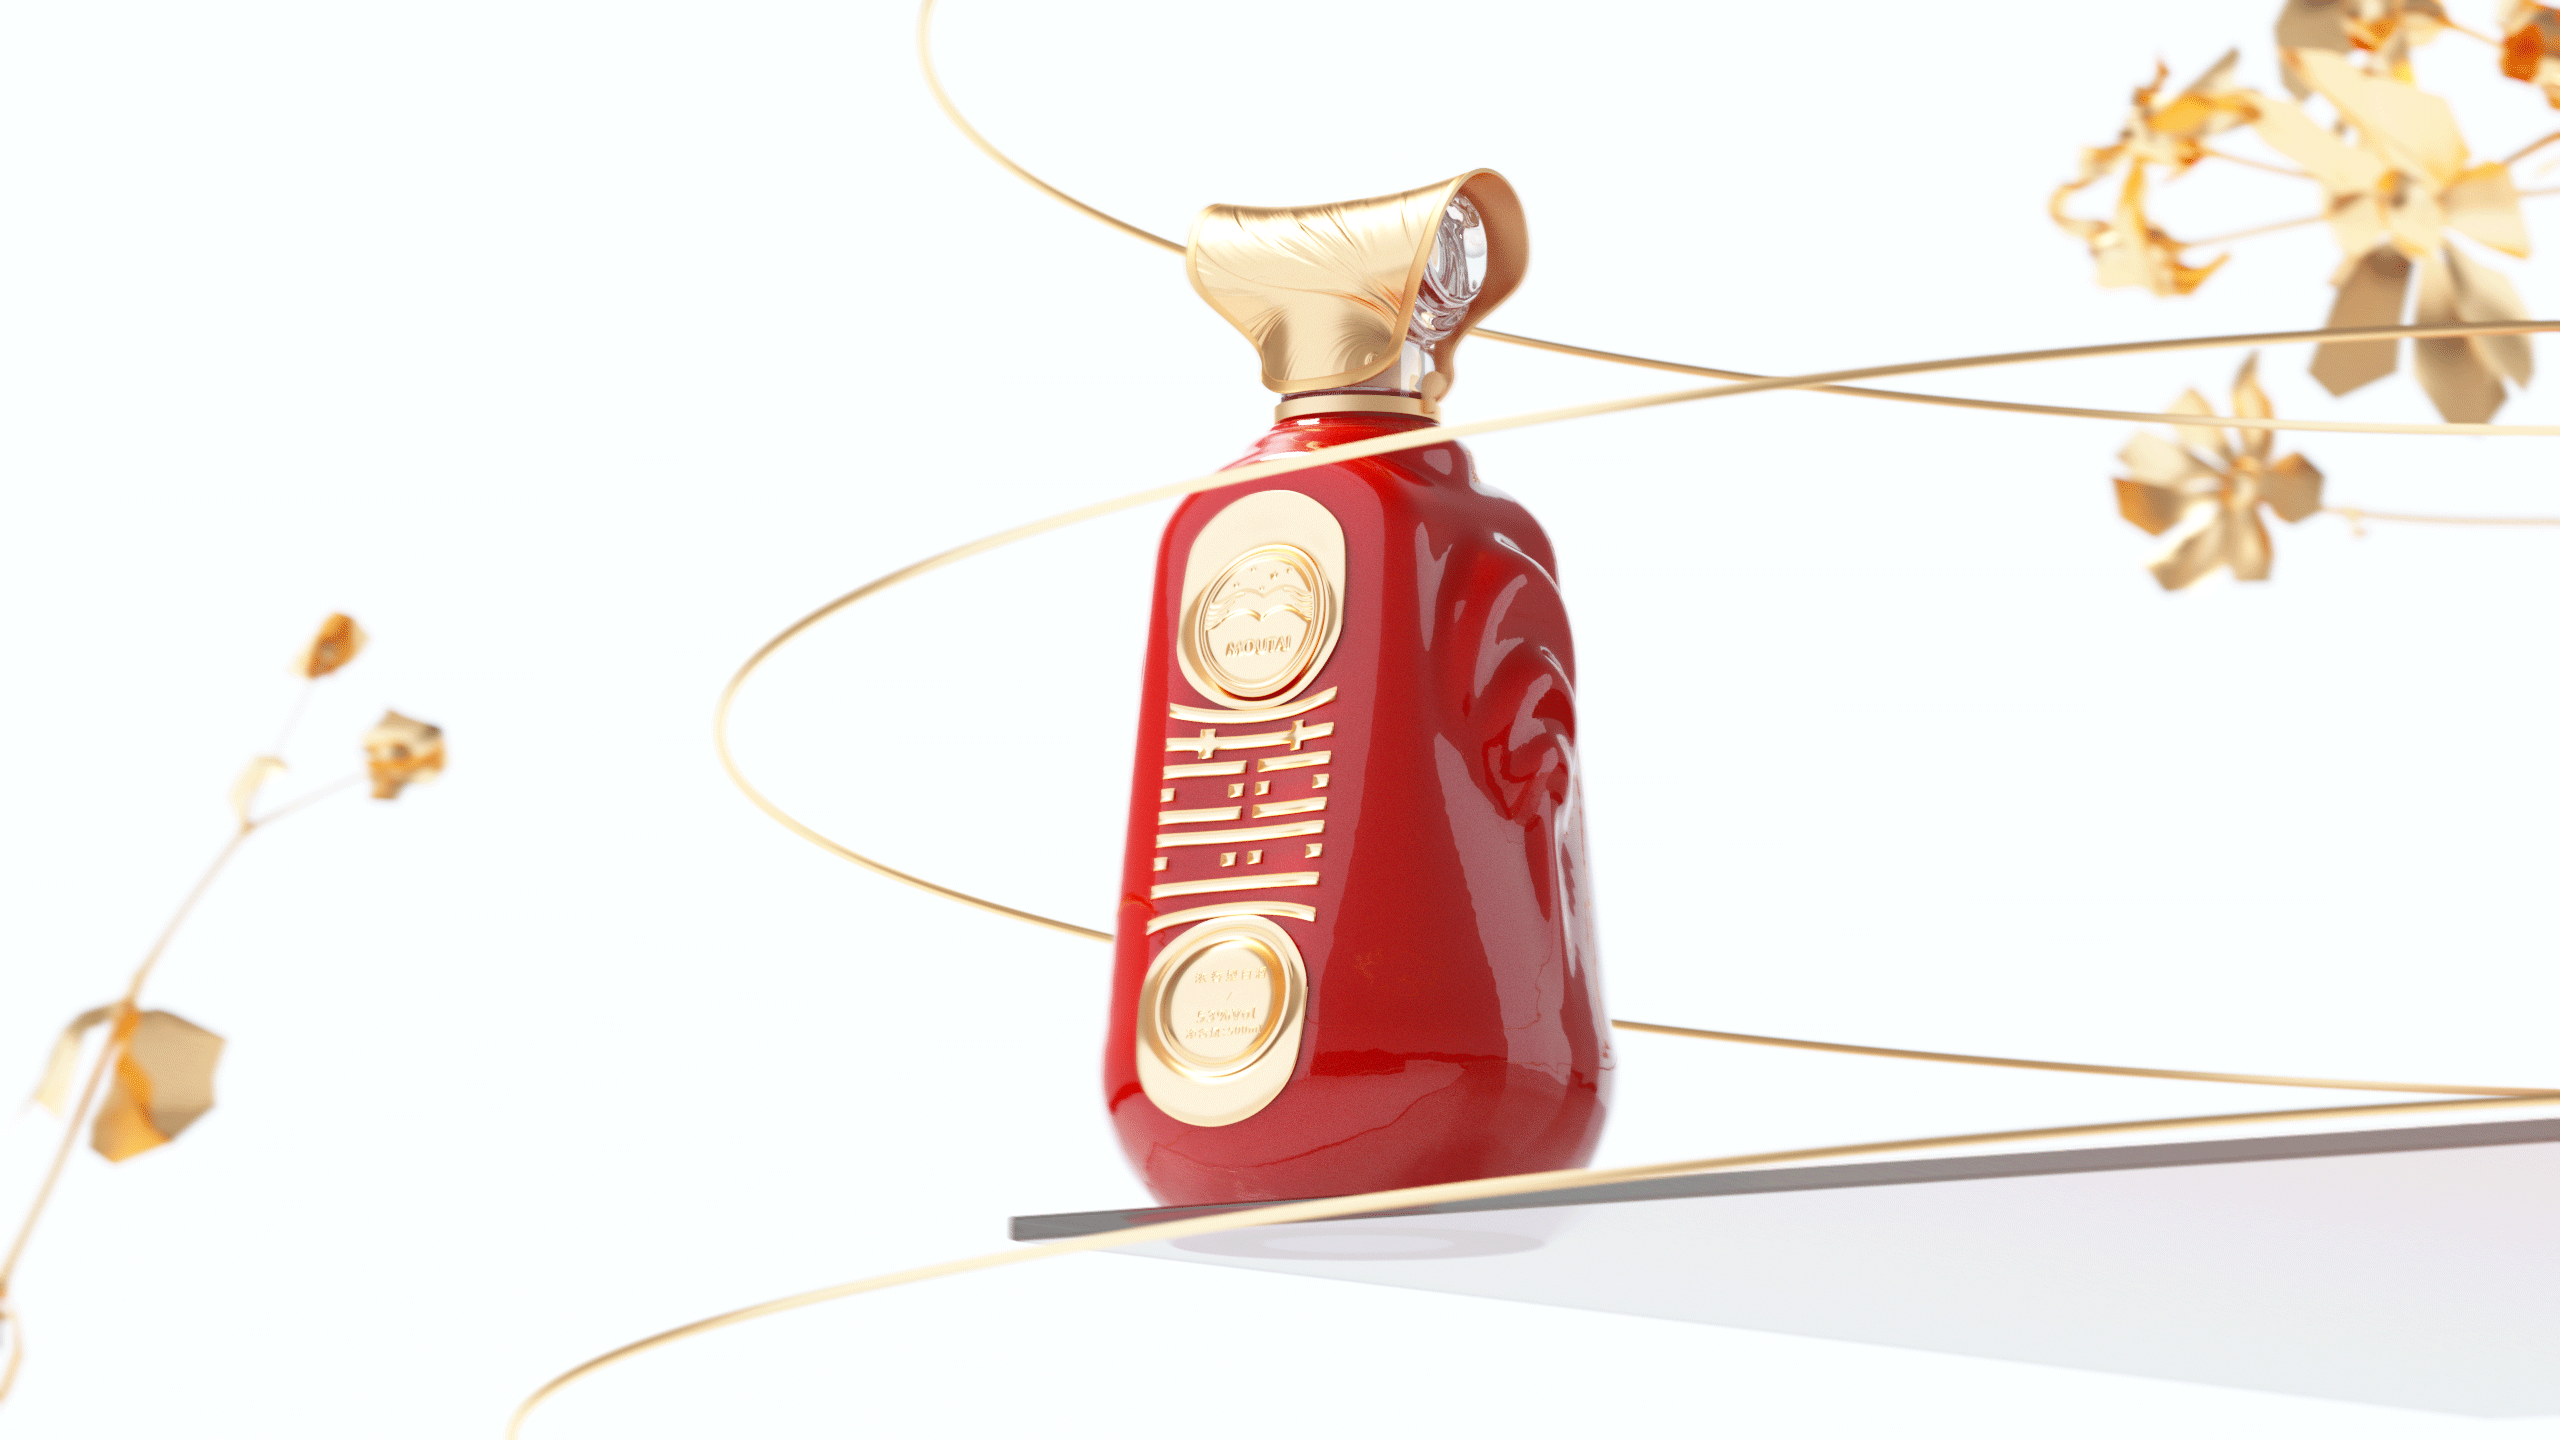 贵州茅台“囍上眉梢”喜酒瓶型造型设计 米克包装设计